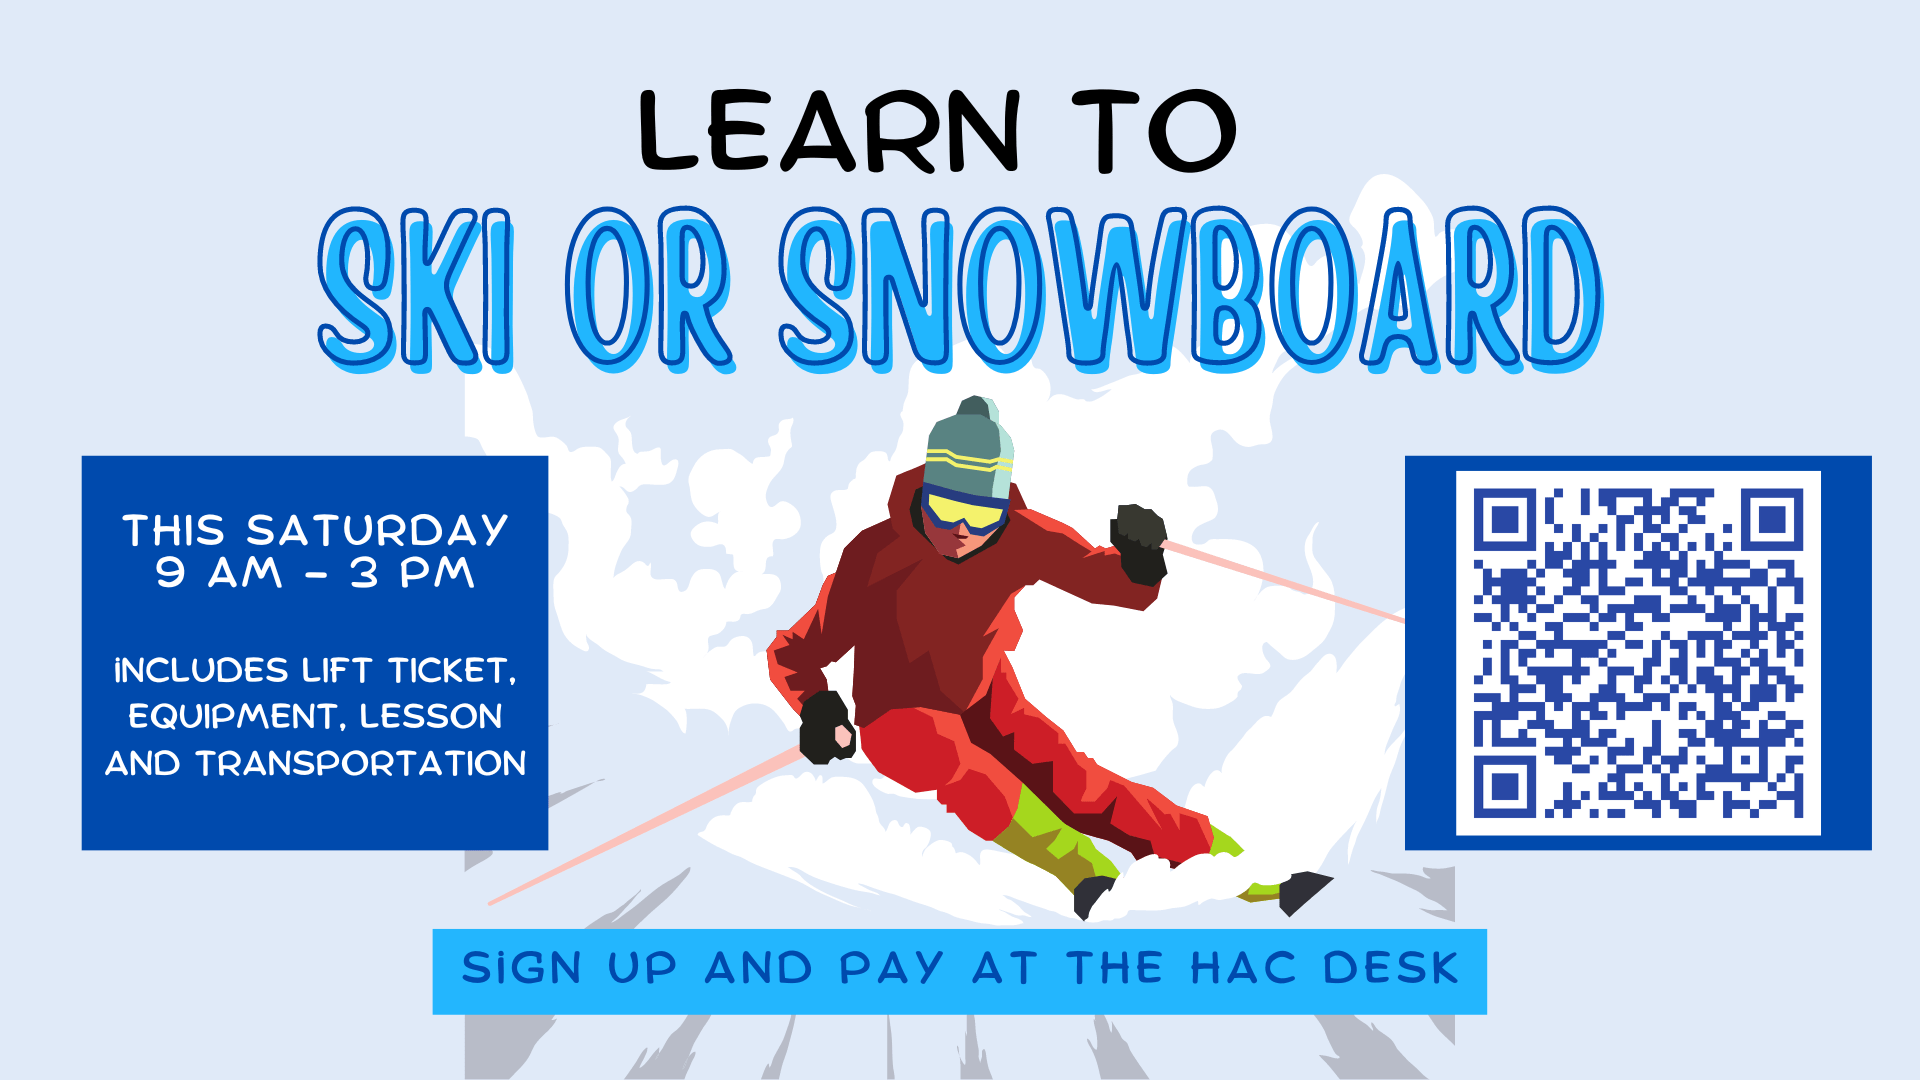 Ski or snowboard lesson